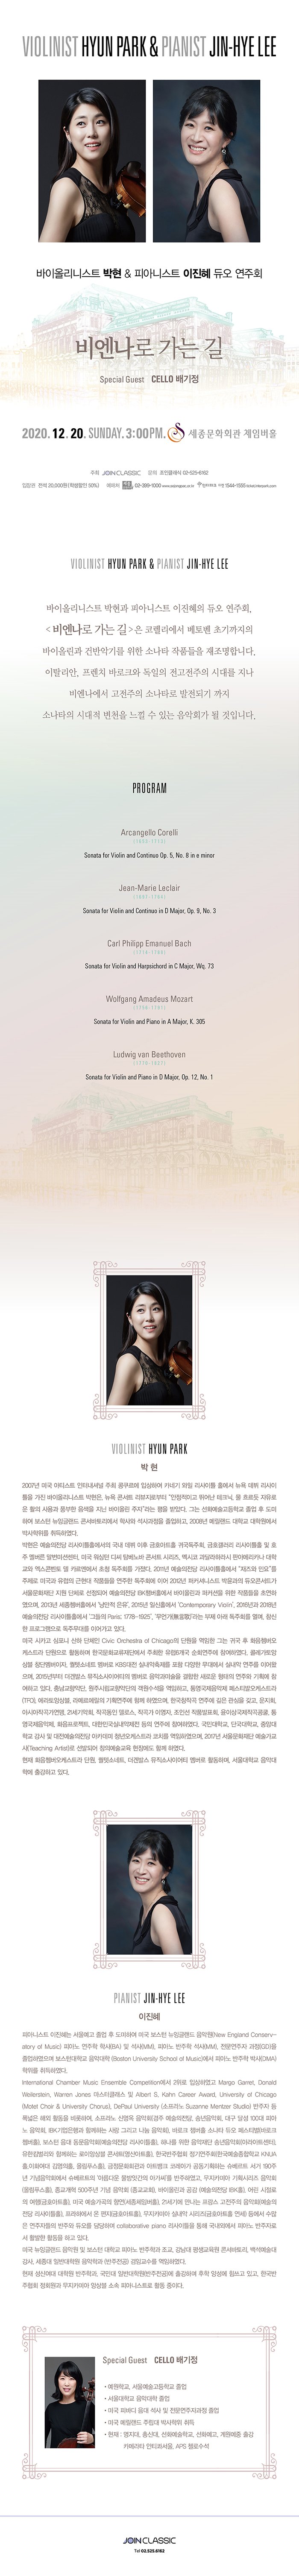 ̿øϽƮ  ǾƴϽƮ   ȸ 񿣳   Special Guest Cello  2020 12 20 sun 7:30pm ȭȸ üӹȦ PROGRAM  ̿øϽƮ  ǾƴϽƮ   ȸ, <񿣳  > ڷ 亥 ʱ ̿ø ǹݾǱ⸦  ҳŸ ǰ մϴ. Ż, ġ ٷũ   ô븦  񿣳  ҳŸ Ǳ  ҳŸ ô õ   ִ ȸ  Դϴ.  Arcangello Corelli (1653-1713) Sonata for Violin and Continuo Op. 5, No. 8 in e minor  Jean-Marie Leclair (1697-1764) Sonata for Violin and Continuo in D Major, Op. 9, No. 3  Carl Philipp Emanuel Bach (1714-1788) Sonata for Violin and Harpsichord in C Major, Wq. 73  Wolfgang Amadeus Mozart (1756-1791) Sonata for Violin and Piano in A Major, K. 305  Ludwig van Beethoven (1770-1827) Sonata for Violin and Piano in D Major, Op. 12, No. 1  VIOLIN /   2007 ̱ ƼƮ ͳų   ԻϿ īױ  Ʋ Ȧ   Ʋ  ̿øϽƮ ,  ܼƮ κ ̰ پ ũ,  帣 ο Ȱ  ǳ   ̿ø ڡ  ޾Ҵ. ״ ȭб   Ͽ  ױ۷ ܼ丮 л  ϰ, 2008 ޸ б п ڻ Ͽ.   ƲȦ    ȣƮȦ ͱȸ, ȣ ƲȦ  ȣ  ̼Ǽ, ̱   Ž ܼƮ ø, ߽ ޶϶ ǾƸ޸ī б ܺ  ī࿡ û ȸ . 2011  ƲȦ  ο䡱  ̱   ǰ  ȸ ̾ 2012 ĿŴϽƮ  ܼƮ ﹮ȭ  ü Ǿ  IBKèȦ ̿ø Ŀ  ǰ ʿϿ, 2013 Ȧ  , 2015 ϽȦ Contemporary Violin, 2016 2018  ƲȦ ׵ Paris; 1778-1925, (ʰ)  Ʒ ȸ ,  α׷ ֹ븦 ̾ ִ. ̱ ī   ü Civic Orchestra of Chicago ܿ  ״ ͱ  ȭɽƮ ܿ Ȱϸ ѱȭܿ  6 ȸֿ Ͽ. ݷӻ âܸ, ݼҳƮ  KBS ǳ  پ 뿡 ǳ ָ ̾, 2015 չ߽ һ̾Ƽ  ǰ̼  ο  ֿ ȹ ϰ ִ. 泲Ǵ, ֽøǴ  ϰ, 뿵 佺Ƽ߿ɽƮ(TFO), ӻ, ޸ ȹֿ Բ Ͽ, ѱâ۰ ֿ   , ȸ, ƽþ۰, 21ȸ, ۰ ν, ۰ ̿, μ ǰǥȸ, ̻۰, 뿵, ȭƮ, ѹαǳ  ֿ Ͽ. δб, ܱб, ߾Ӵб    ī ûɽƮ ġ Ͽ, 2017 ﹮ȭ (Teaching Artist) ߵǾ âǿ 忡 Բ Ͽ.  ȭɽƮ ܿ, ݼҳƮ, չ߽ һ̾Ƽ  Ȱϸ, б Ǵп Ⱝϰ ִ.  PIANO /  ǾƴϽƮ  ￹   Ͽ ̱  ױ۷ ǿ(New England Conservatory of Music) ǾƳ  л(BA)  (MM), ǾƳ  (MM),  (GD) Ͽ ϴб Ǵ (Boston University School of Music) ǾƳ  ڻ(DMA)  Ͽ. International Chamber Music Ensemble Competition 2 ԻϿ Margo Garret, Donald Weilerstein, Warren Jones Ŭ  Albert S. Kahn Career Award, University of Chicago (Motet Choir & University Chorus), DePaul University ( Suzanne Mentzer Studio)    ؿ Ȱ Ͽ,  ſ ȸ( , ۳ȸ, 뱸 ޼ 100 ǾƳ ȸ, IBK Բϴ  ׸  ȸ), ٷũ èȦ ҳŸ  佺Ƽ(ٷũ Ȧ),   ȸ( ƲȦ), ϳ   ۳ȸ(ƶƮ), Ŵ Բϴ ̾ӻ ܼƮ(ƮȦ), ѱȸ ⿬ȸ(ѱб KNUAȦ,ȭ 迵Ȧ, øǪȦ), ī̾ ȹø ȸ(øǪȦ), ȭȸ Ʈũ ڷư ȹϴ Ʈ  190ֳ ȸ Ʈ Ƹٿ Ѱ ư Ͽ, ī̾ ȹø ȸ(øǪȦ),  500ֳ  ȸ (ȸ), ̿ø  (  IBKȦ),   (ȣƮȦ), ̱  ⿬(üӹȦ), 21⿡    ȸ( ƲȦ), Ͽ  (ȣƮȦ), ī̾ ǳ ø(ȣƮȦ )   ڵ ֿ  ϸ collaborative piano Ʋ  ܿ ǾƳ ڷμ Ȱ Ȱ ϰ ִ. ̱ ױ۷ ǿ   б ǾƳ а ,   ܼ丮, 鼮 ,  Ϲݴп а () ӱ Ͽ.  ſ п а, δ Ϲݴп() Ⱝϸ  缺  ְ, ѱȸ ȸ ī̾ ӻ Ҽ ǾƴϽƮ Ȱ ̴. ̱ ױ۷ ǿ   б ǾƳ а ,   ܼ丮, 鼮 ,  Ϲݴп а () ӱ Ͽ.  ſ п а, δ Ϲݴп() Ⱝϸ  缺  ְ, ѱȸ ȸ ī̾ ӻ ƼƮ Ȱ ̴.  SPECIAL GUEST / CELLO  * б, ￹б  * б Ǵ  * ̱ ǹٵ    ڰ  * ̱ ޸ ָ ڻ  * ) , ѽŴ, ȭб, ȭ,  Ⱝ, ī޶Ÿ Ƽ⼭, APS ÿμ